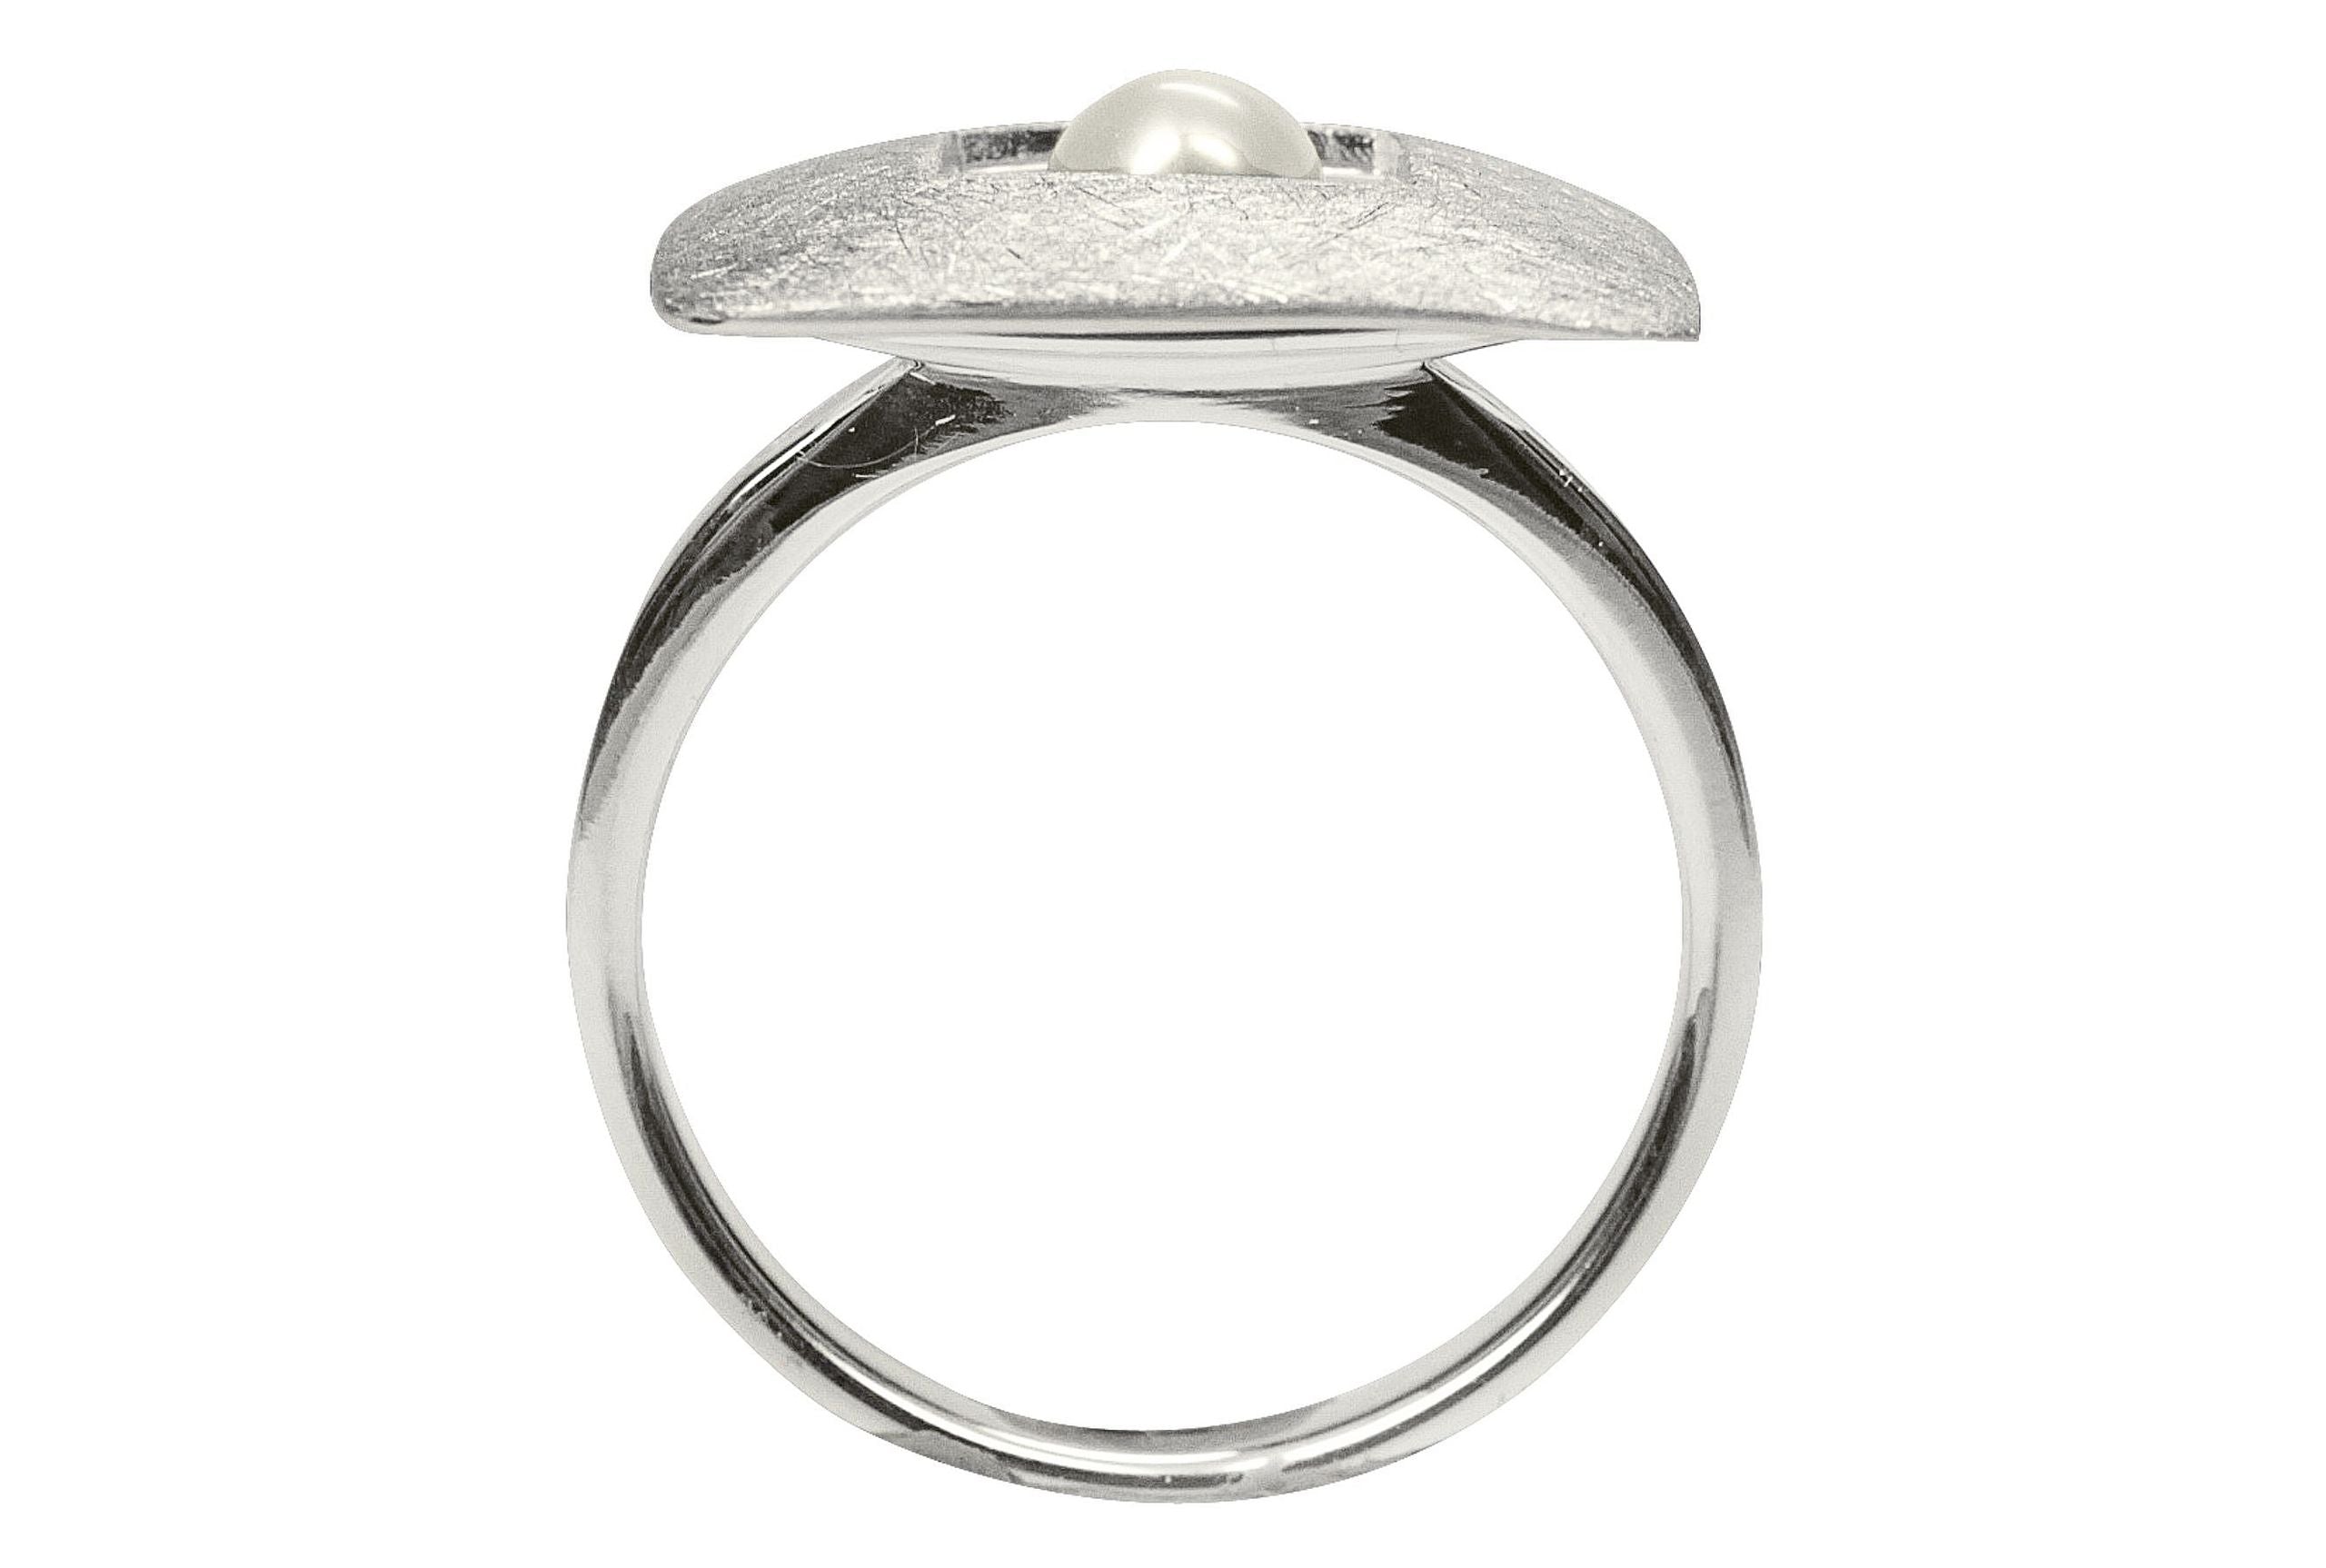 Damenring aus Silber mit einer Perle, die mittig in einem quadratischen Zierelement sitzt. Die Ringschiene ist klassisch gearbeitet.